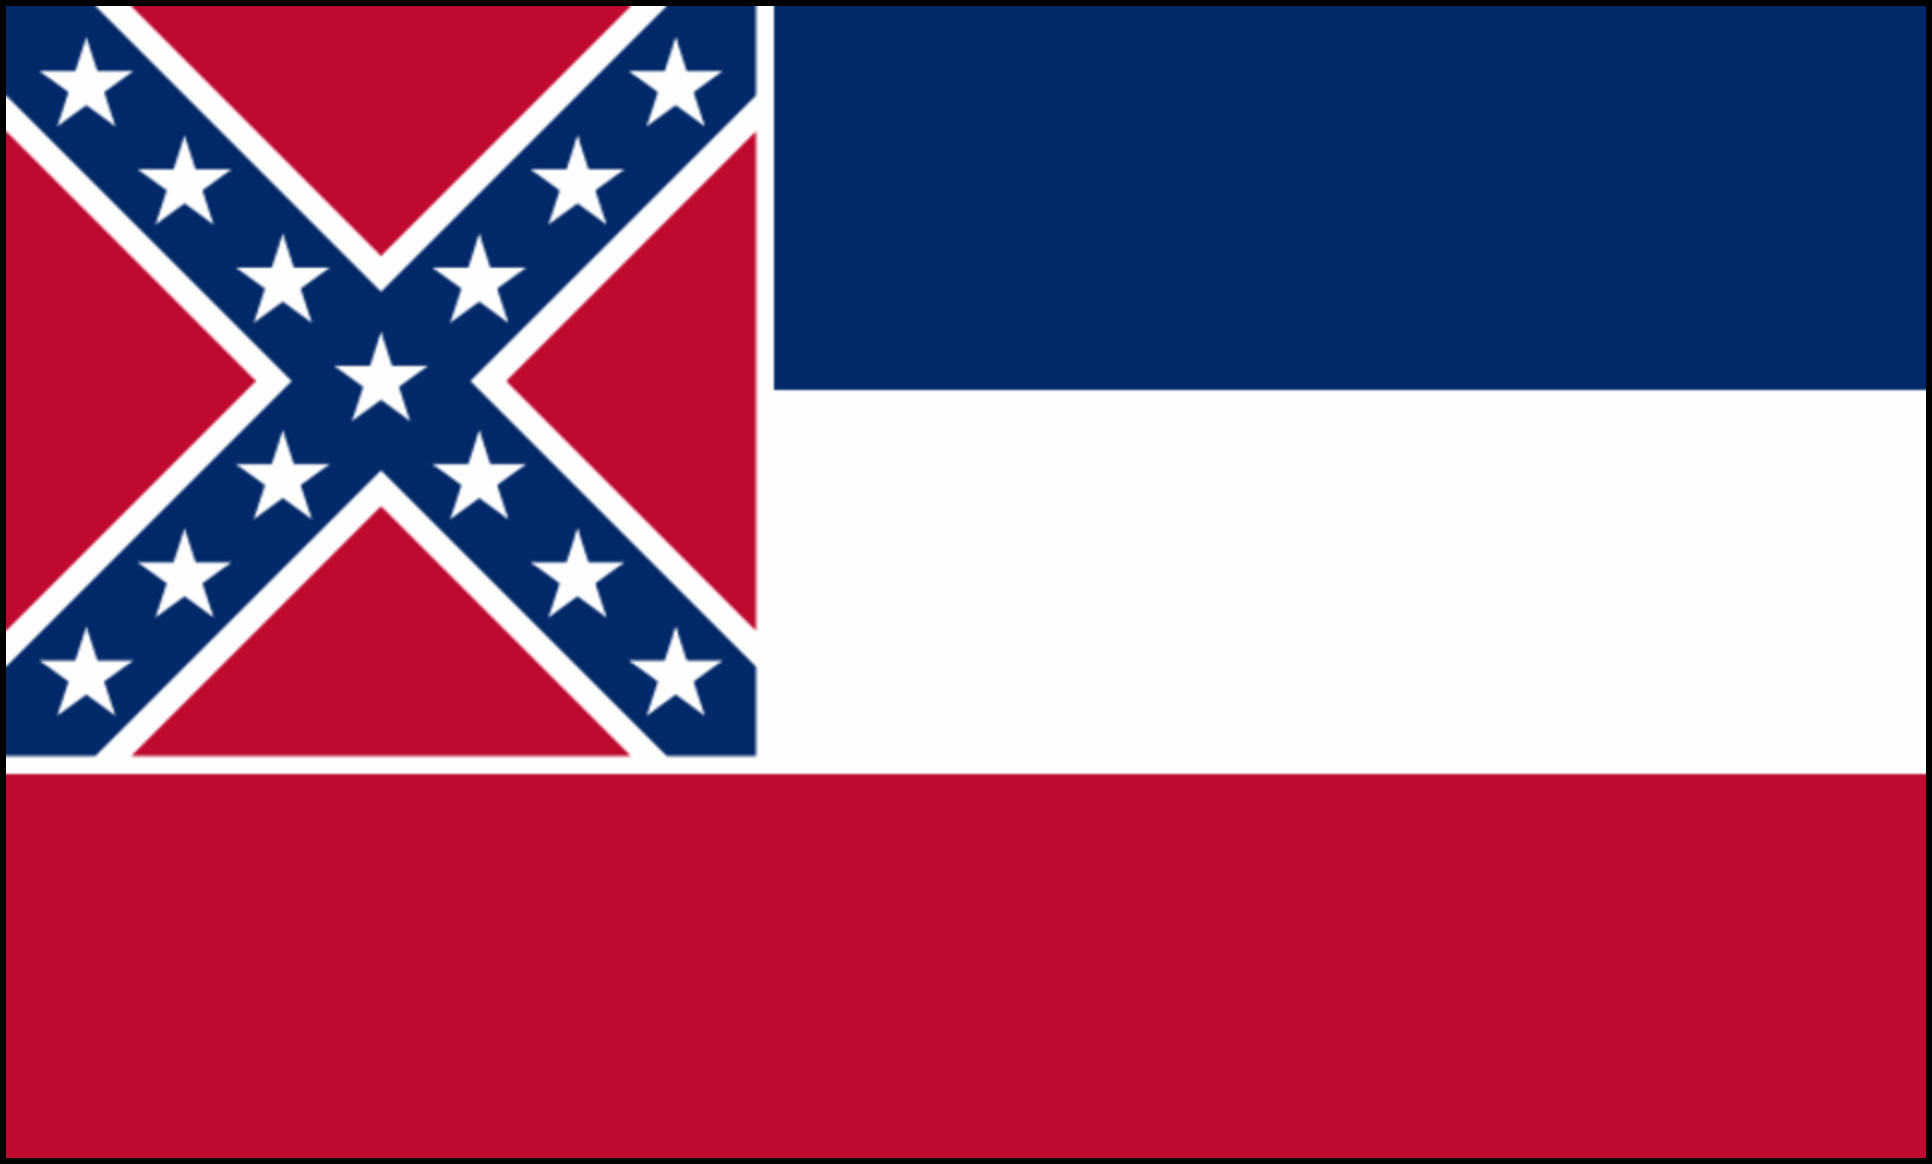 Mississippi State flag